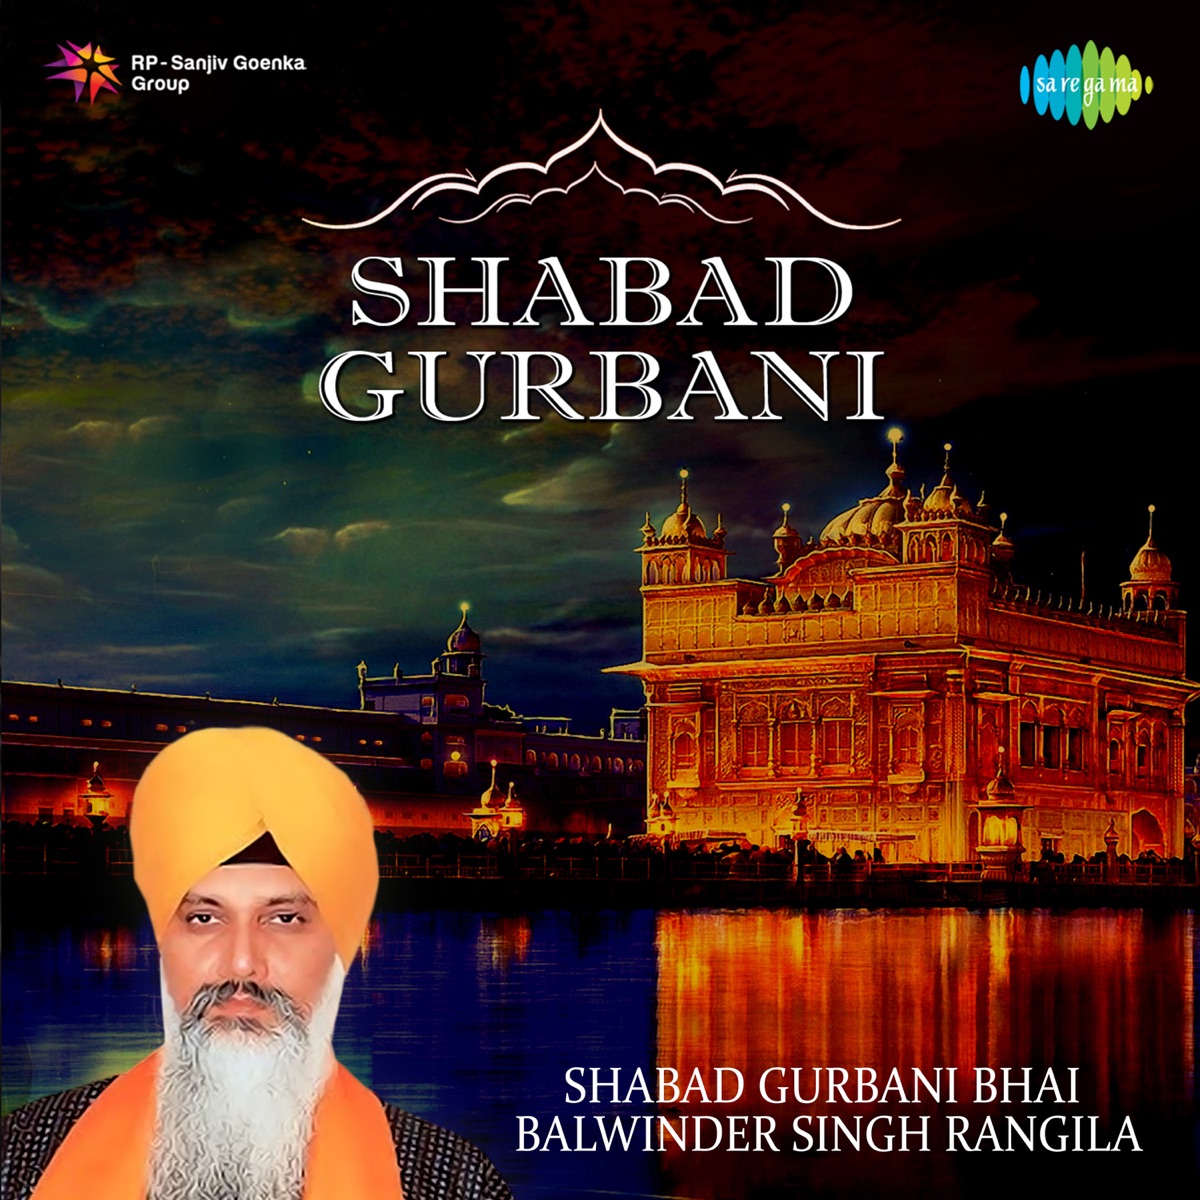 Shabad Gurbani - Album by Bhai Harbans Singh Ji Jagadhari Wale, Bhai  Balwinder Singh Rangila & Bhai Harchand Singh Ragi - Apple Music